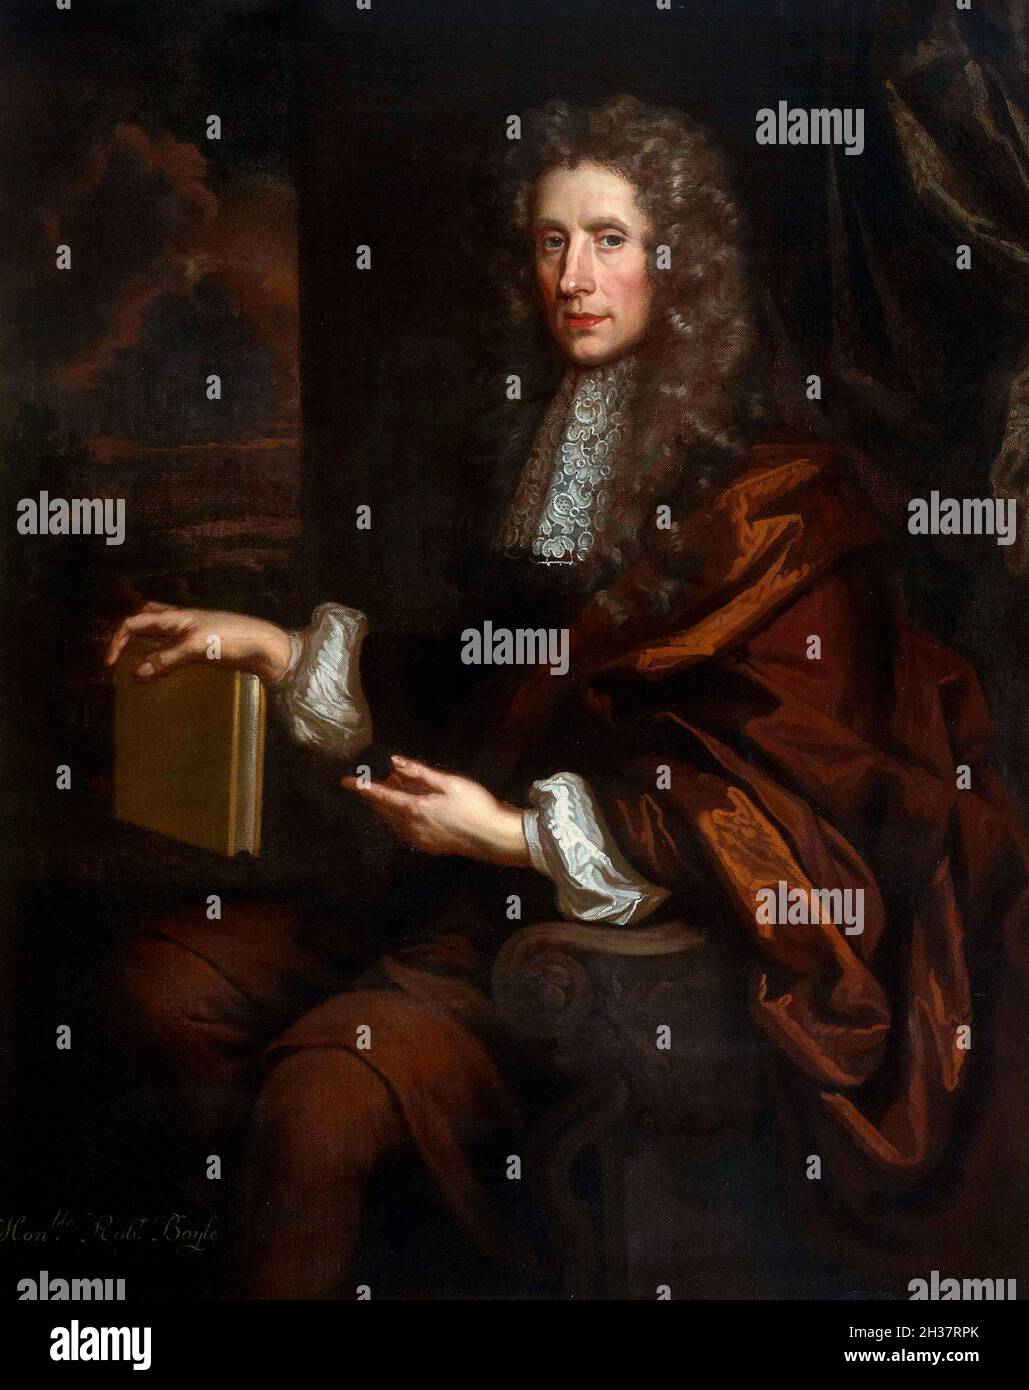 Robert Boyle. Retrato del filósofo natural anglo-irlandés, químico, físico e inventor, Robert Boyle (1627-1691) de John Riley, óleo sobre lienzo, 1689 Foto de stock